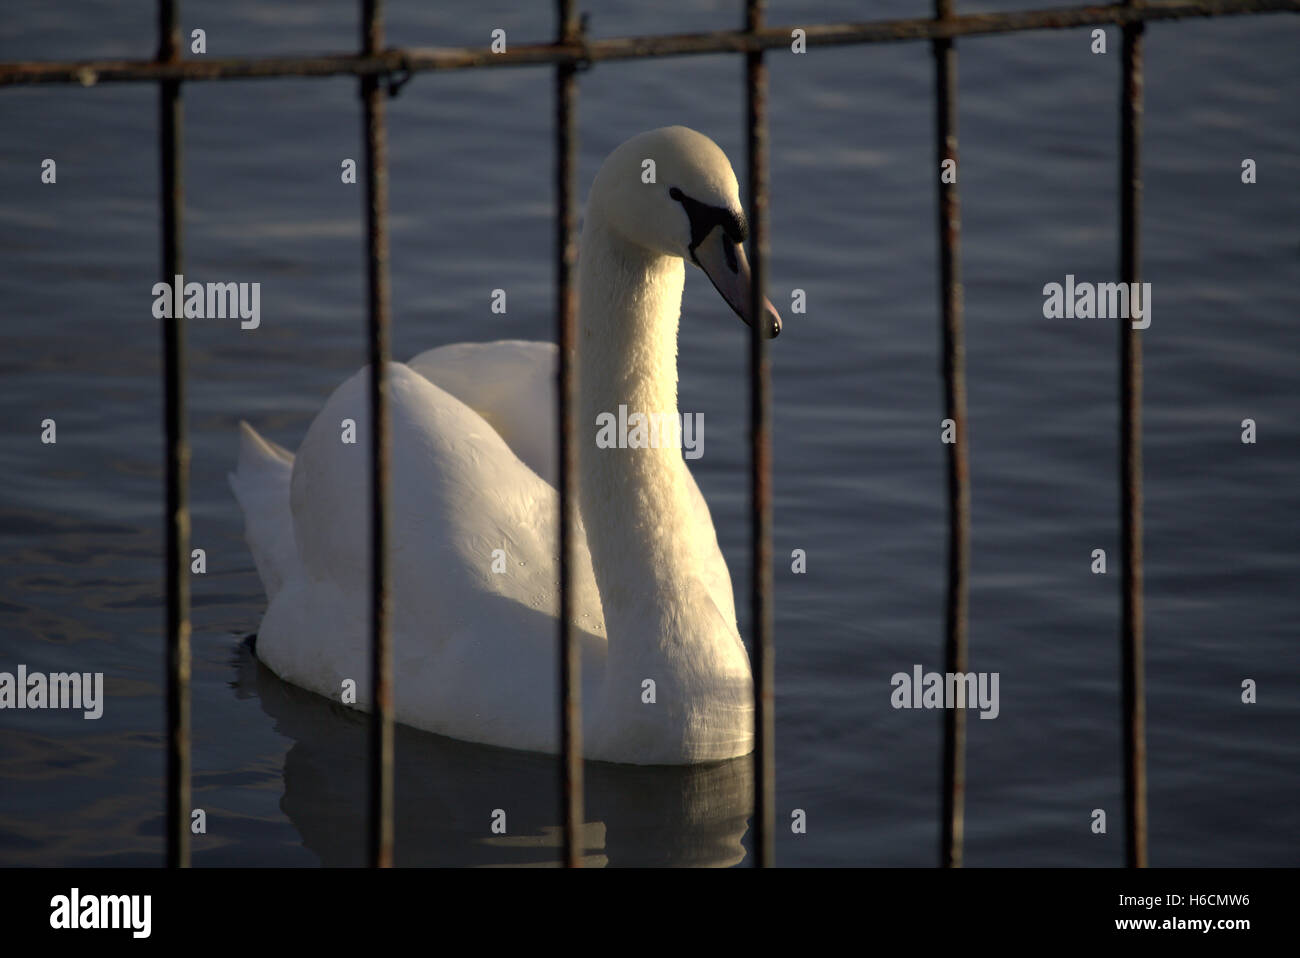 En swan pond detrás de la jaula de alambre Foto de stock